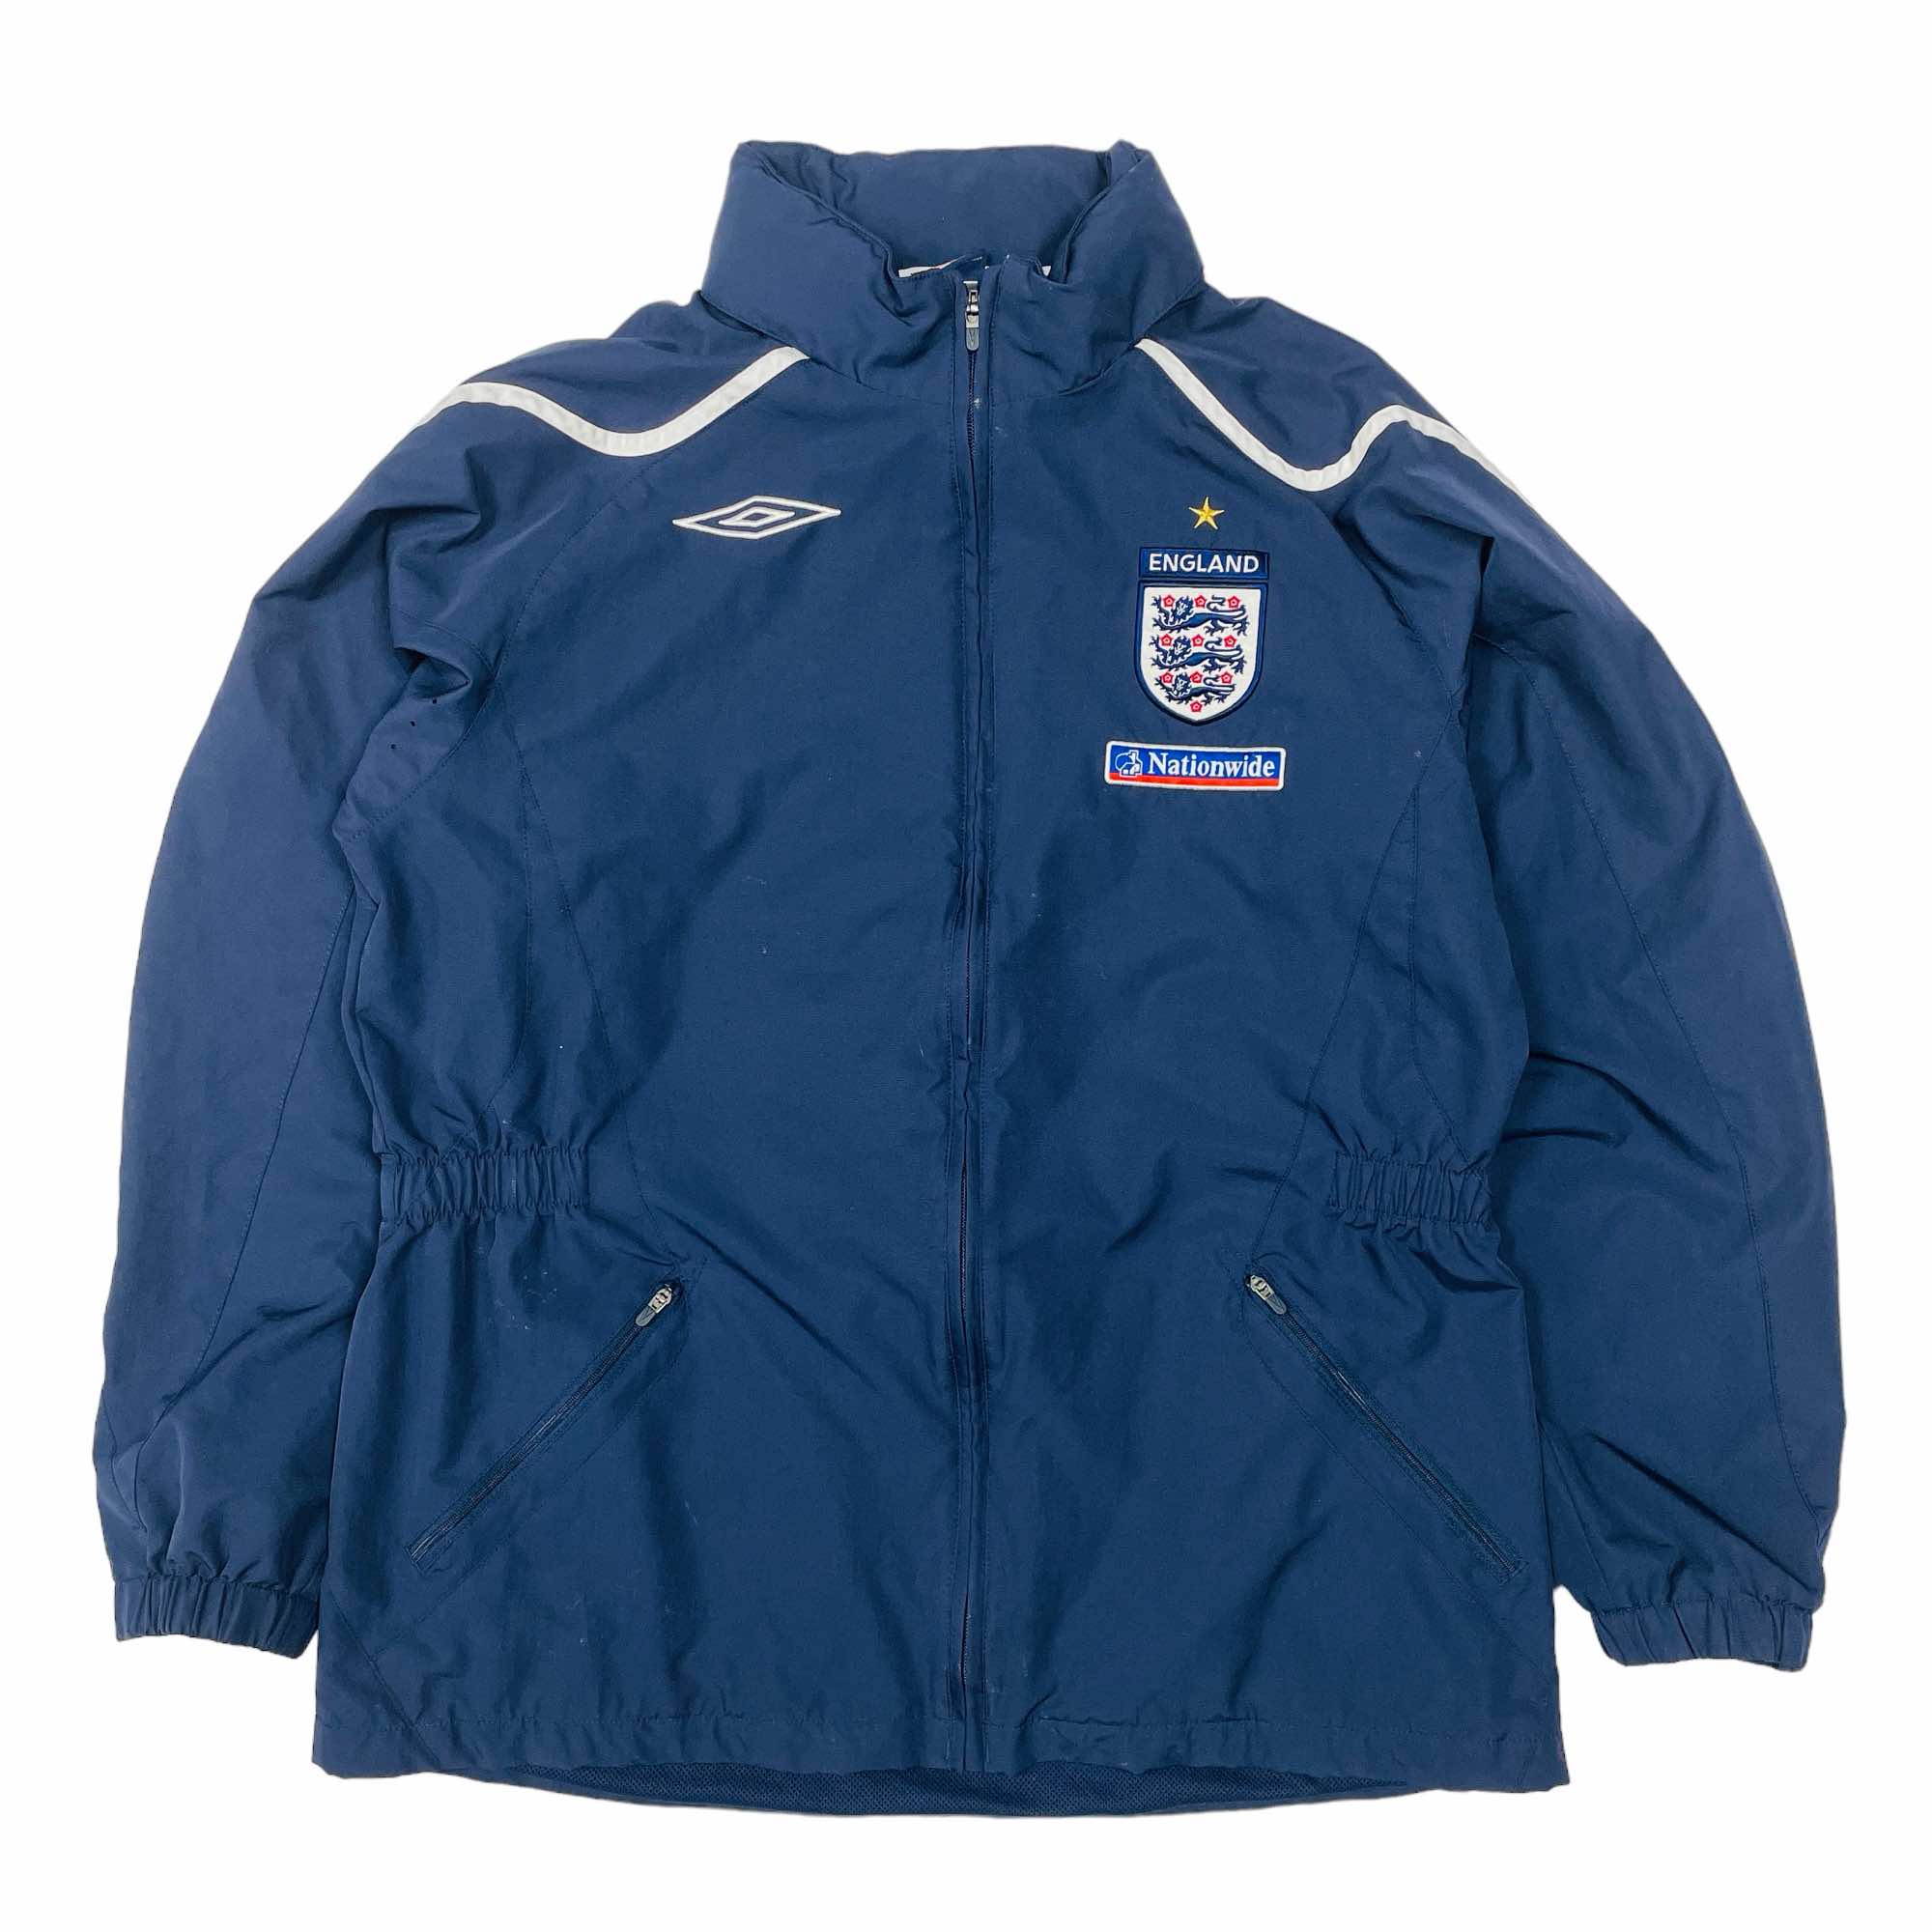 England 2007/09 Umbro Training Jacket - Medium